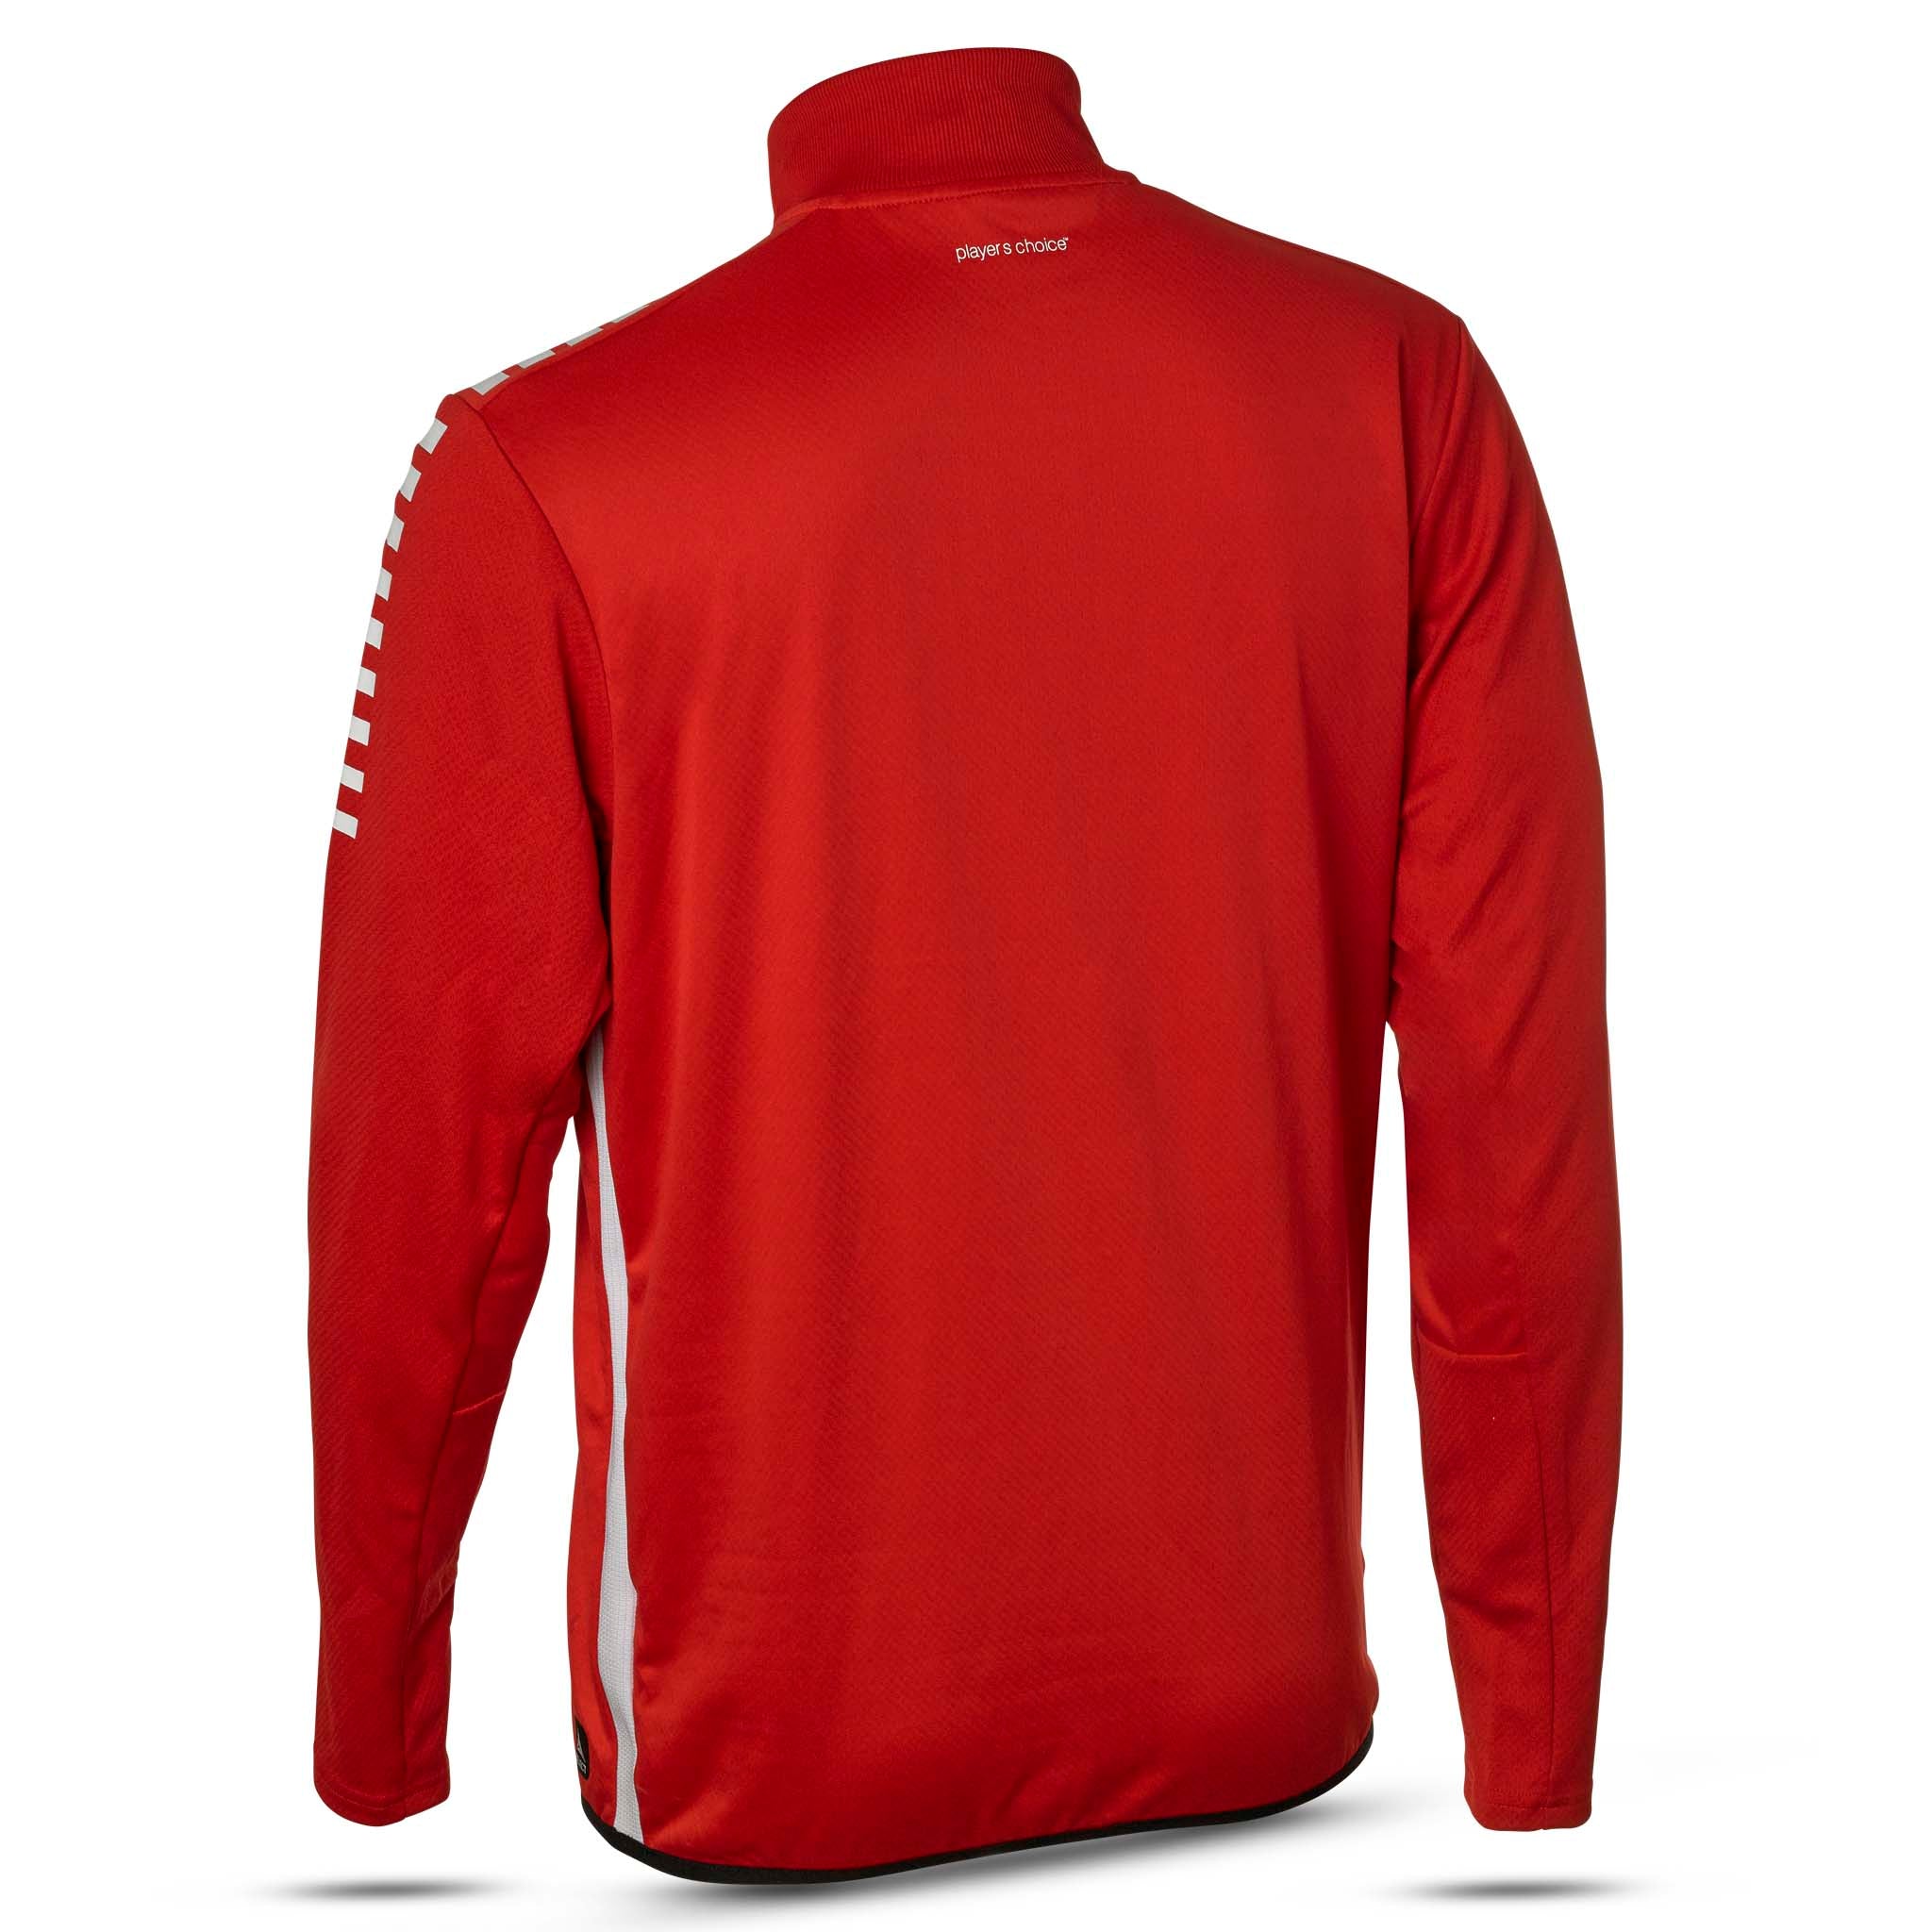 Sweatshirt för träning - Monaco, ungdom #färg_röd